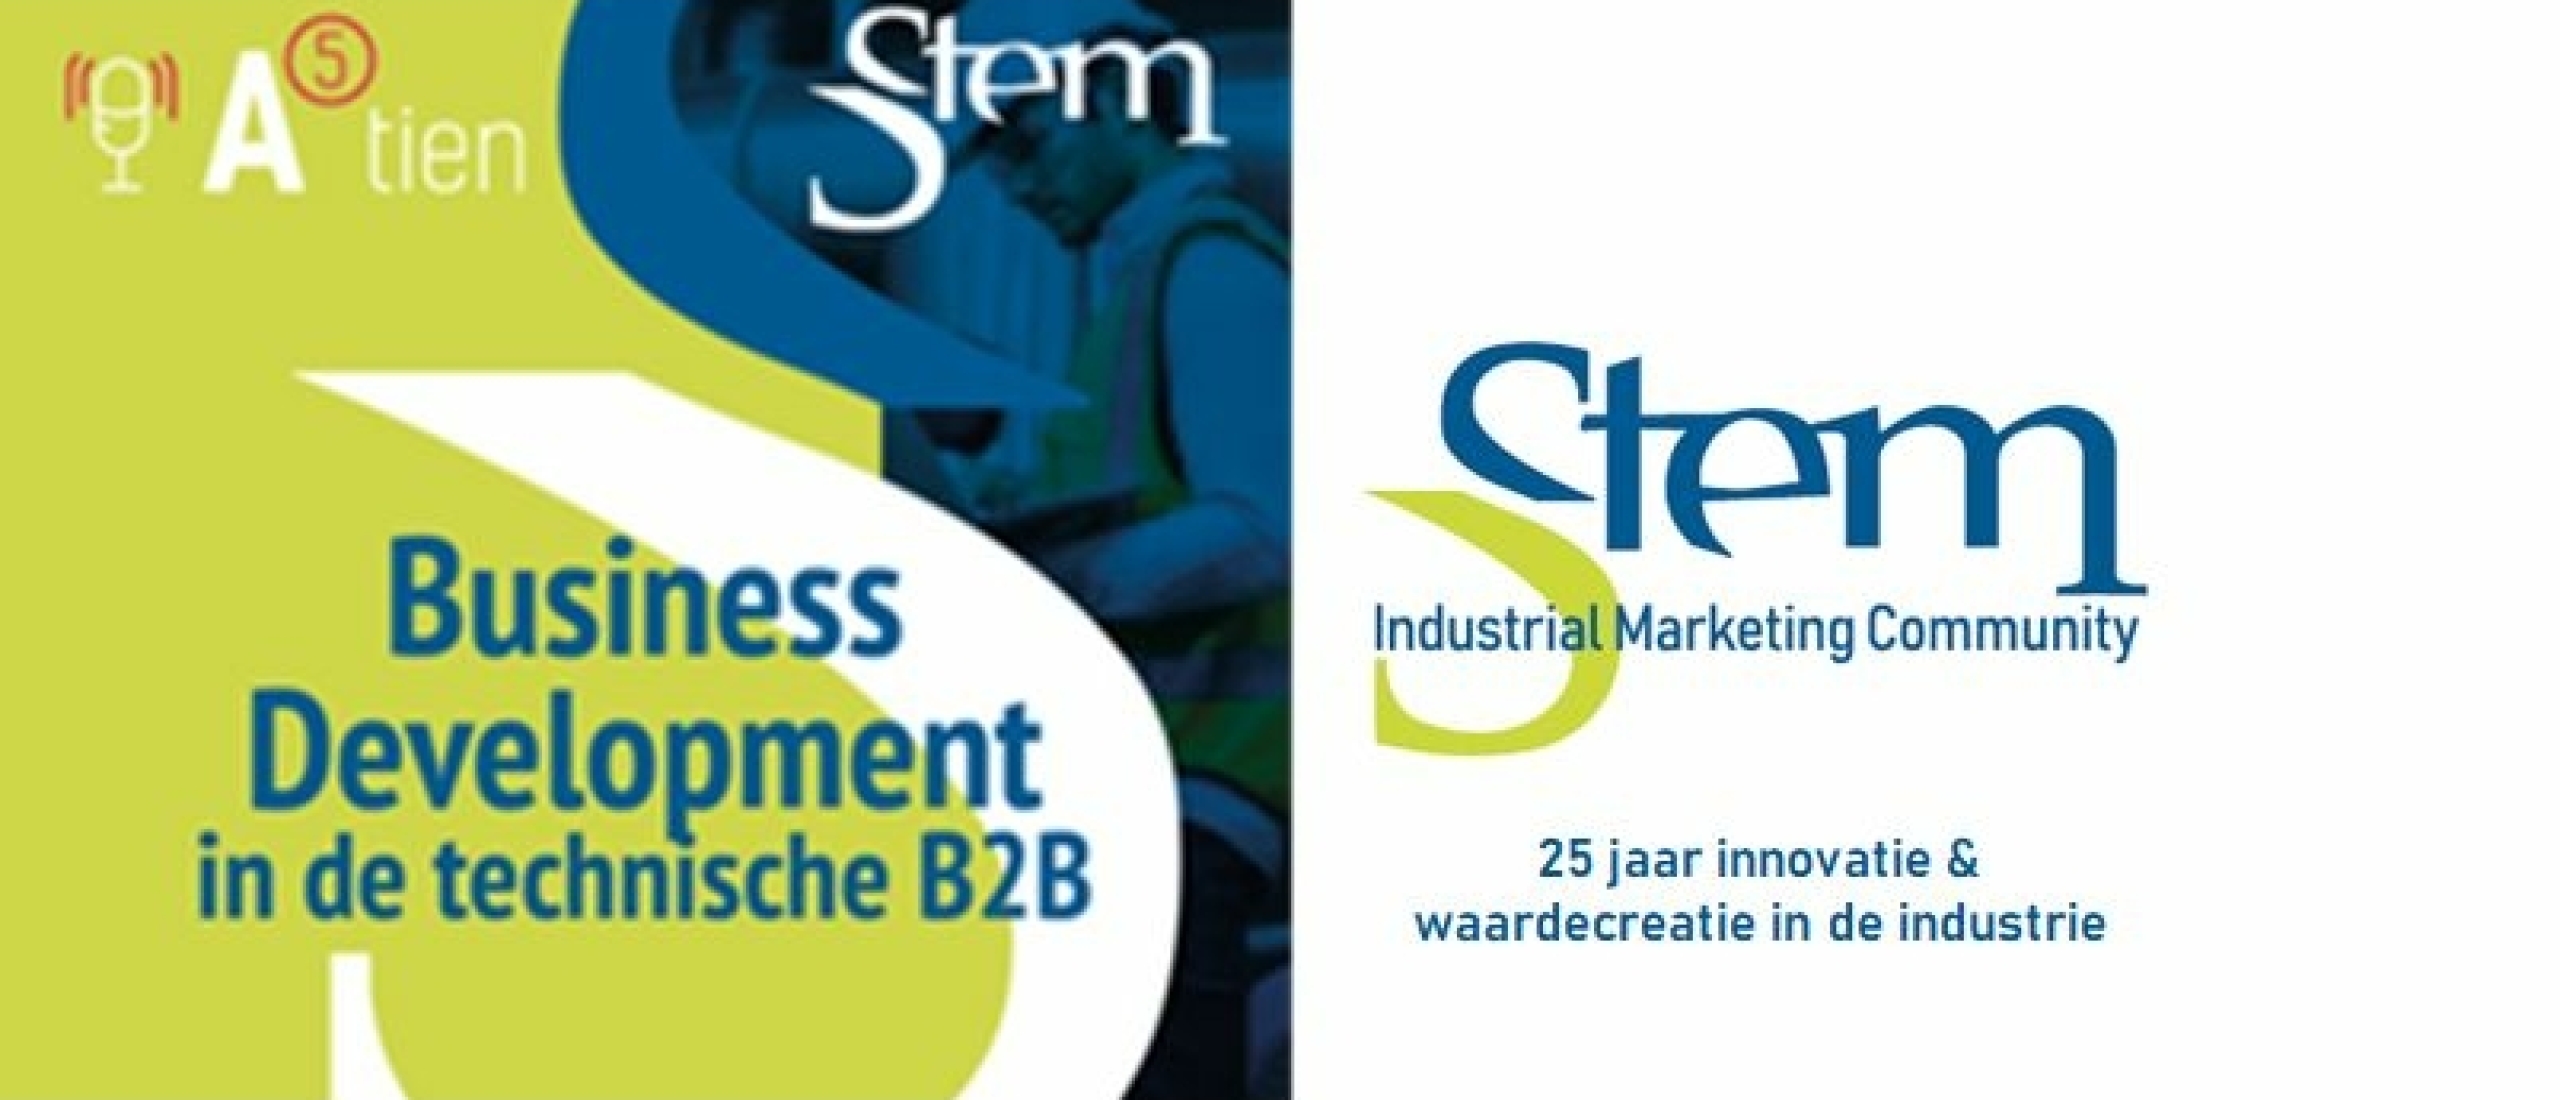 STEM podcast #2 - over de opleiding Business Development in technische B2B